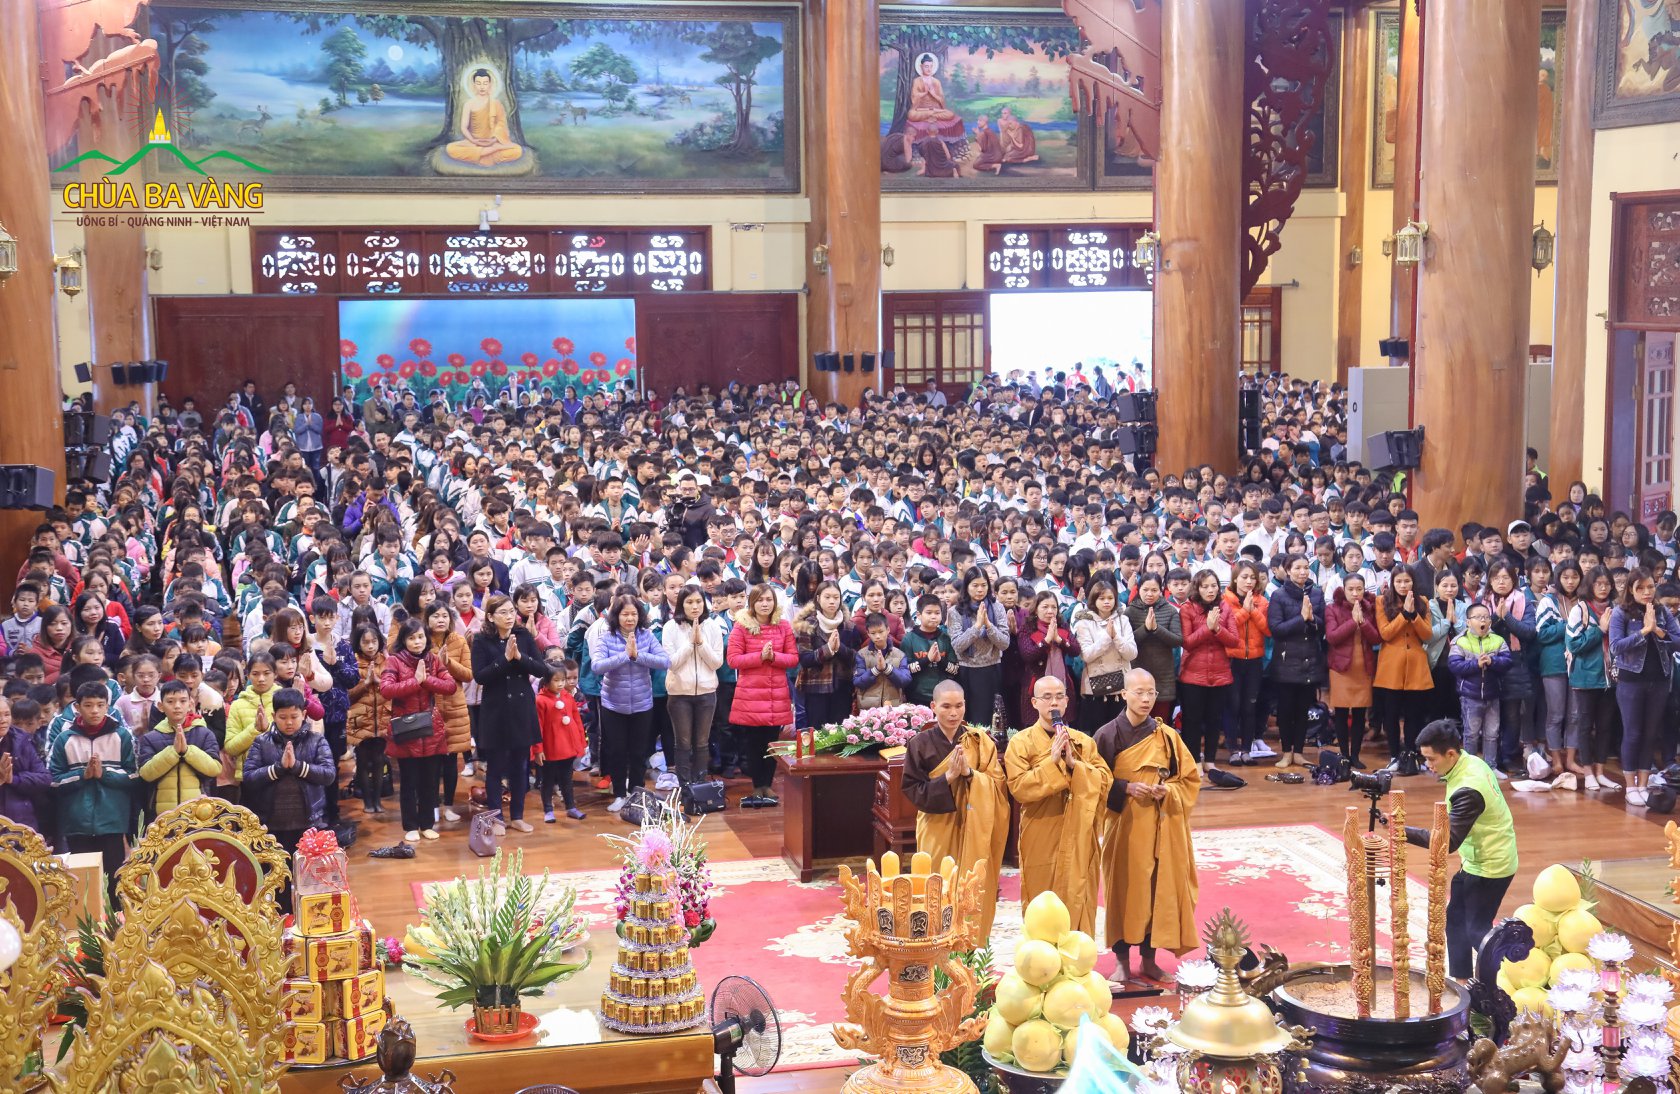 Chư Tăng chùa Ba Vàng tác lễ cầu an cho hai trường THCS tỉnh Hải Dương.